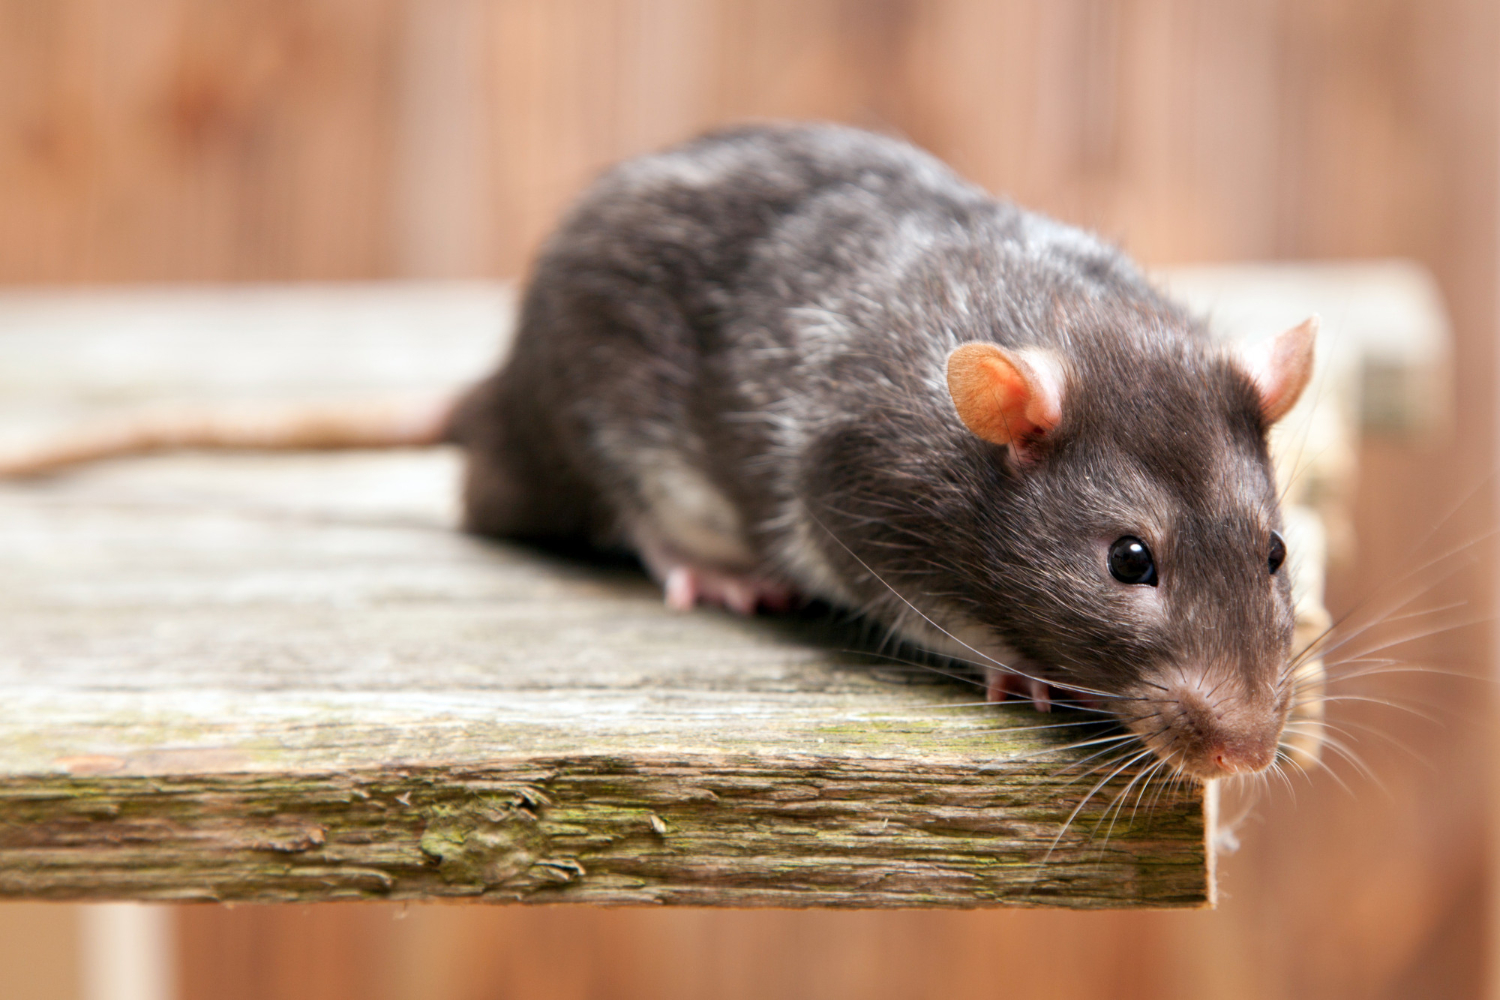 Protégez votre domicile : Tout ce que vous devez savoir sur les souris, comment les éviter et quand faire appel à un professionnel